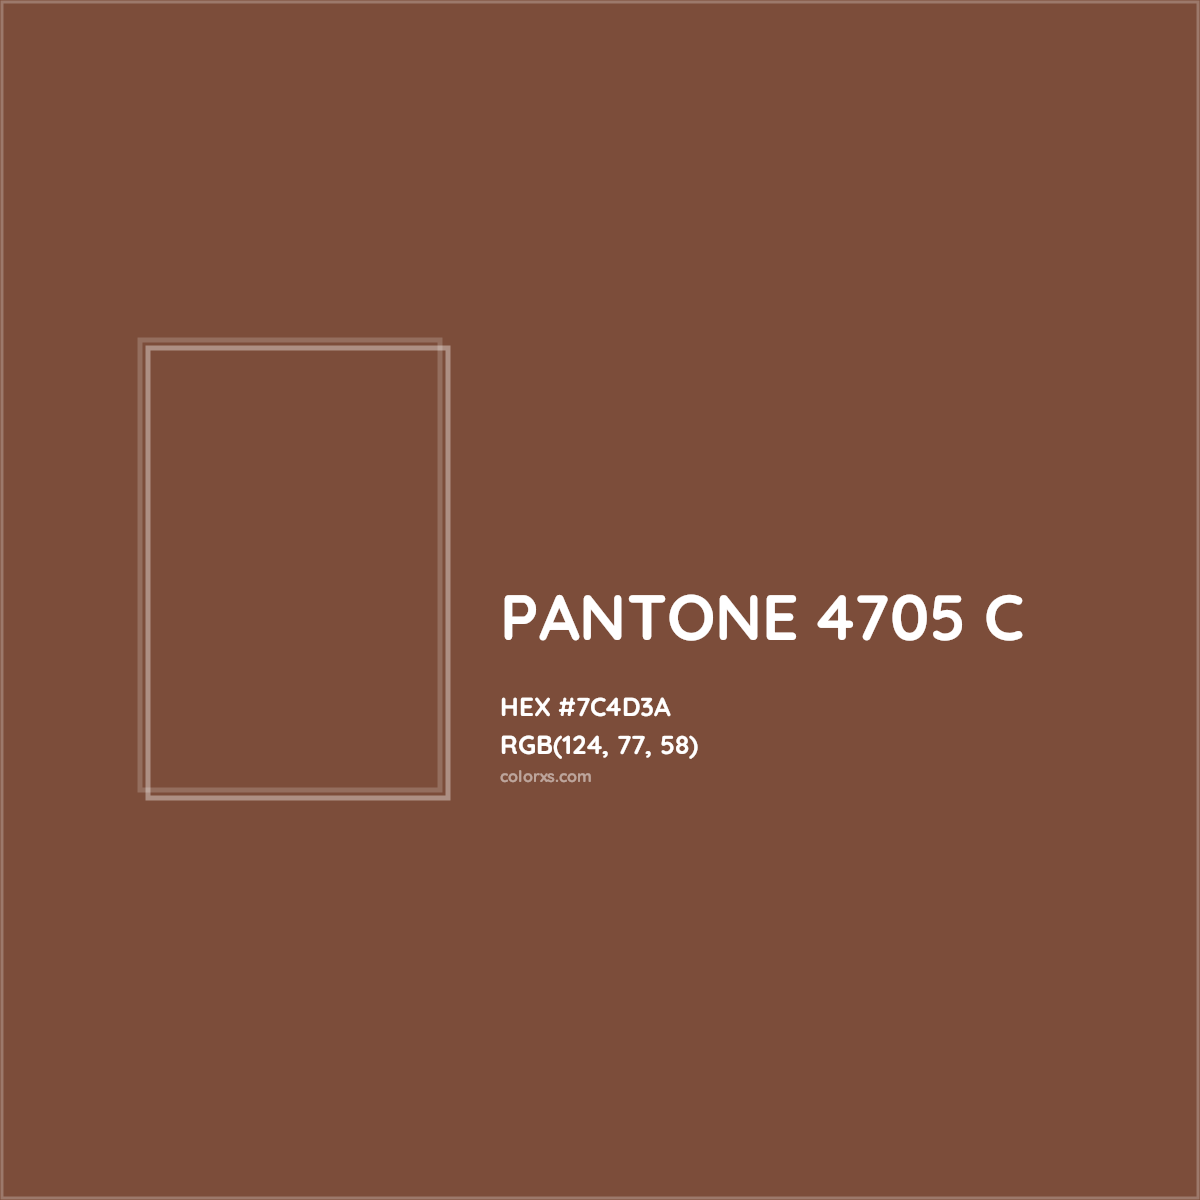 HEX #7C4D3A PANTONE 4705 C CMS Pantone PMS - Color Code